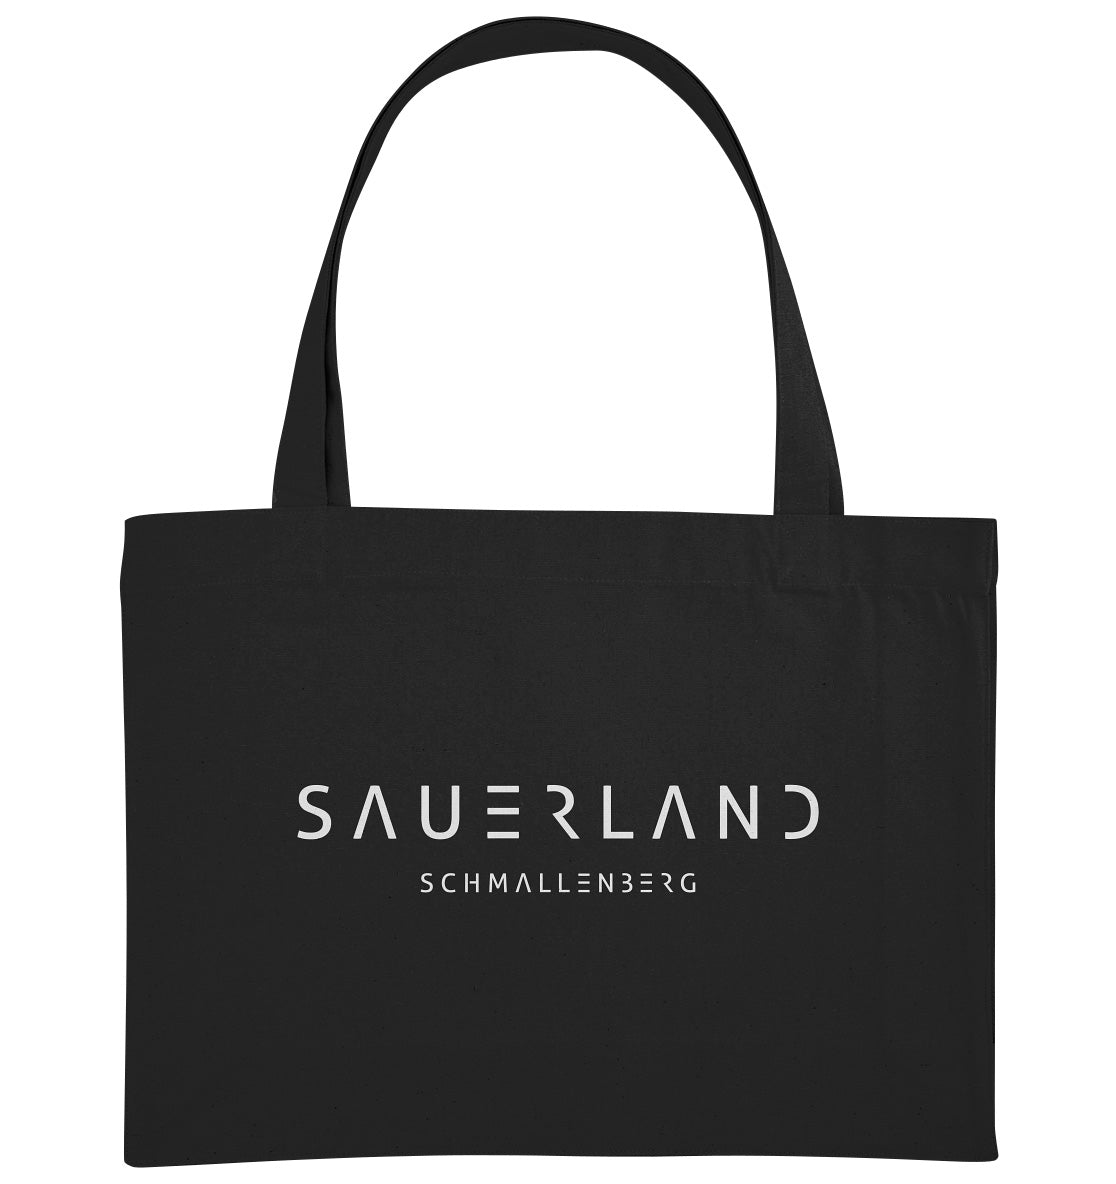 Schwarze Baumwolltasche mit weißem Sauerland Logo bedruckt. Der moderne Schriftzug wird darunter mit dem Dorfnamen ergänzt. In diesem Fall der Stadt Schmallenberg.